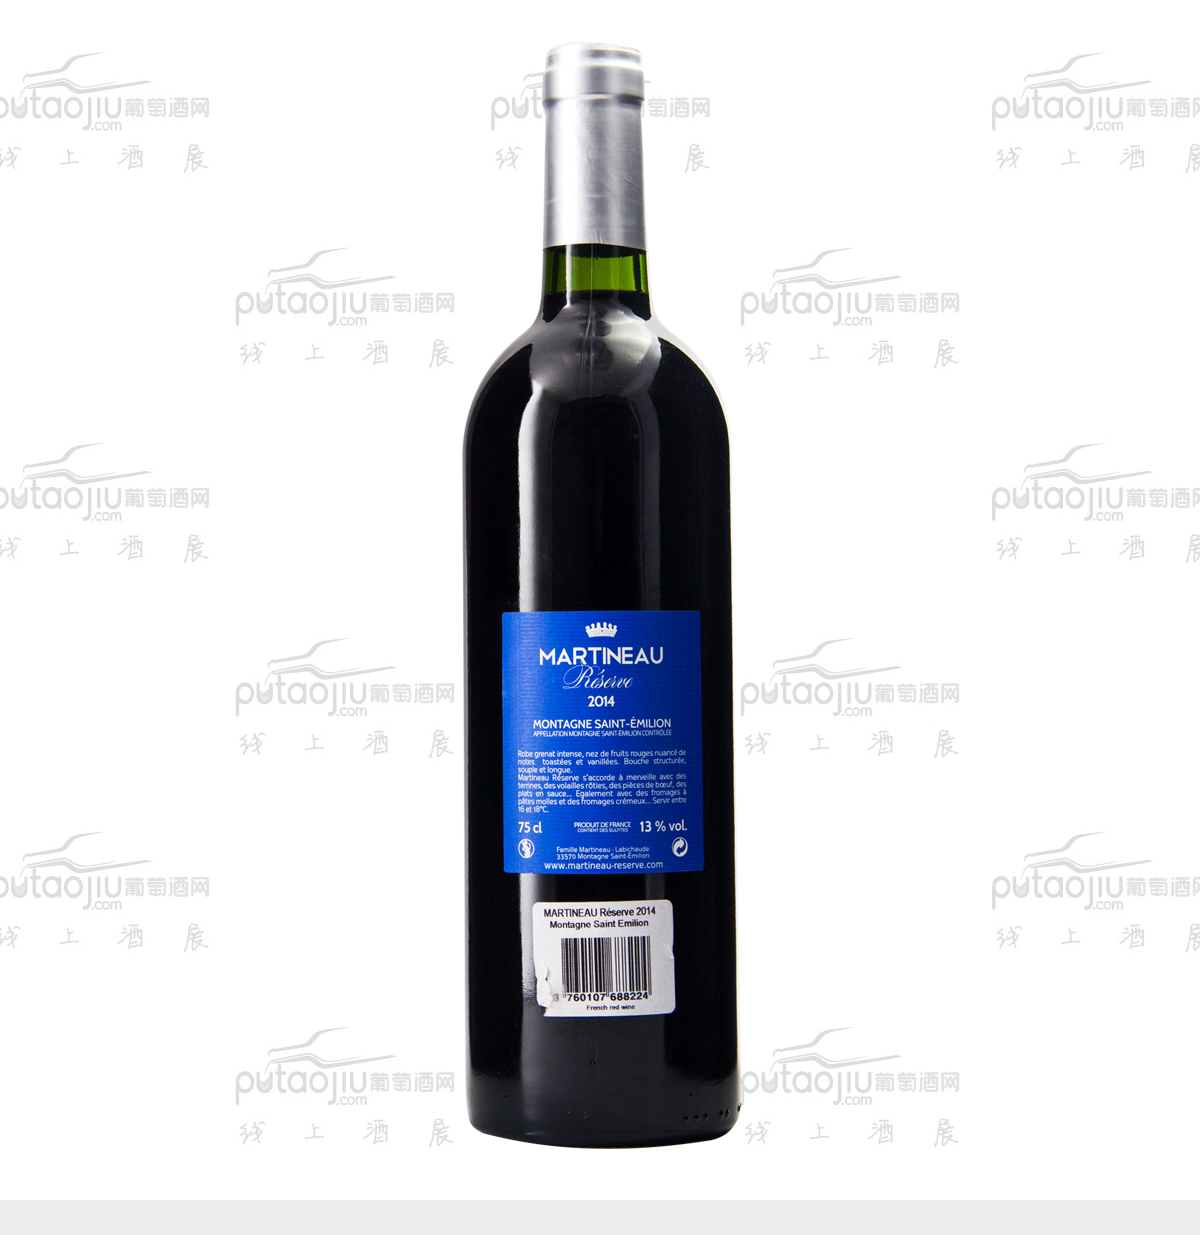 法国波尔多圣艾美隆马丁酒庄混酿AOC干红葡萄酒